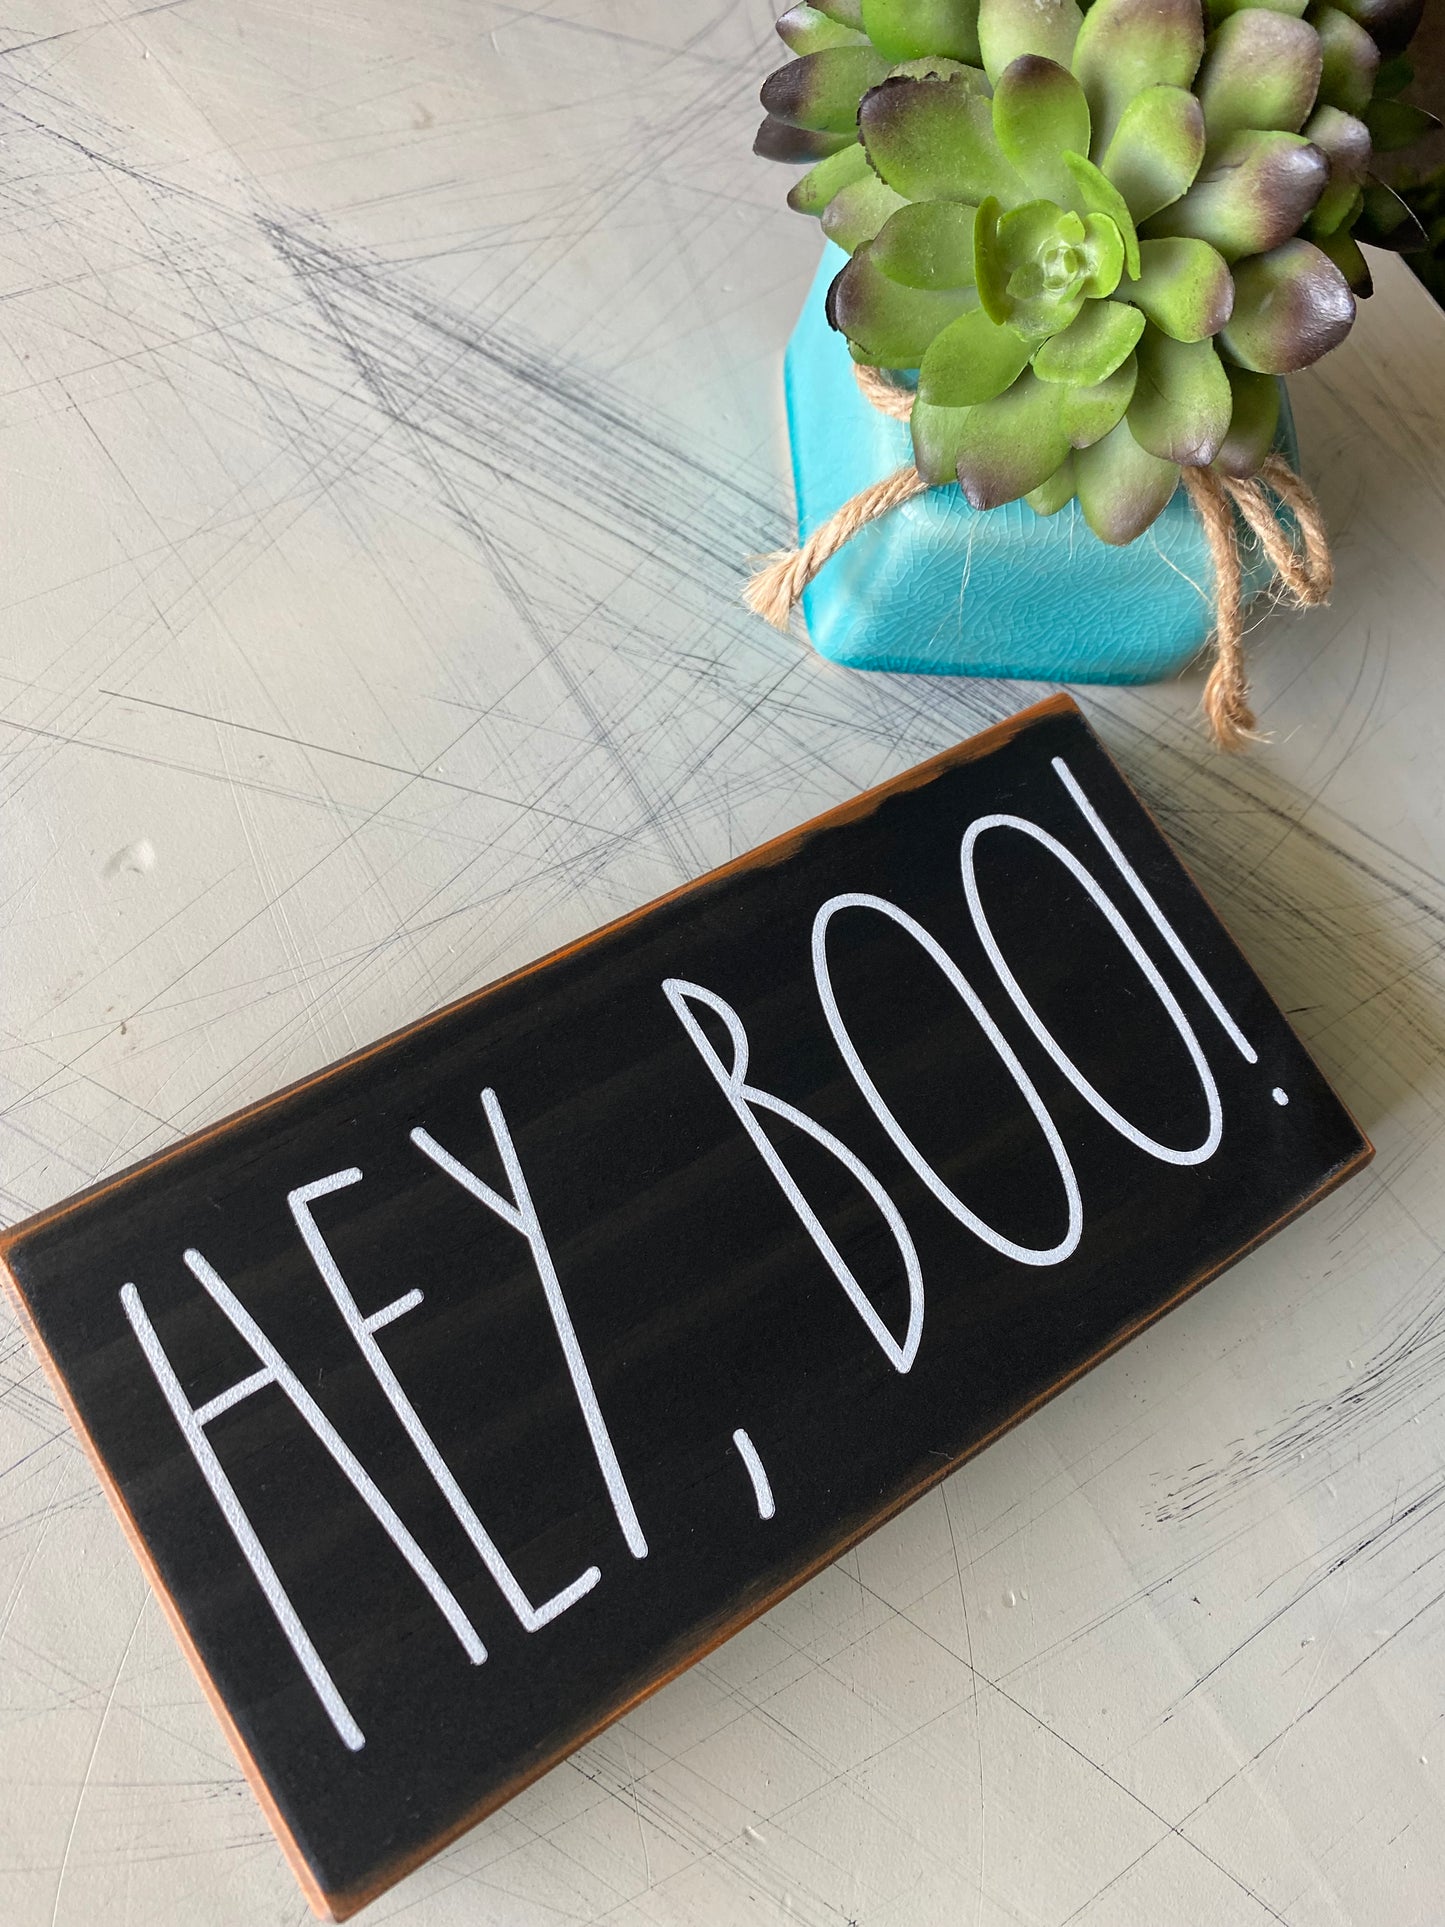 Hey, boo! - Halloween handmade mini wood sign